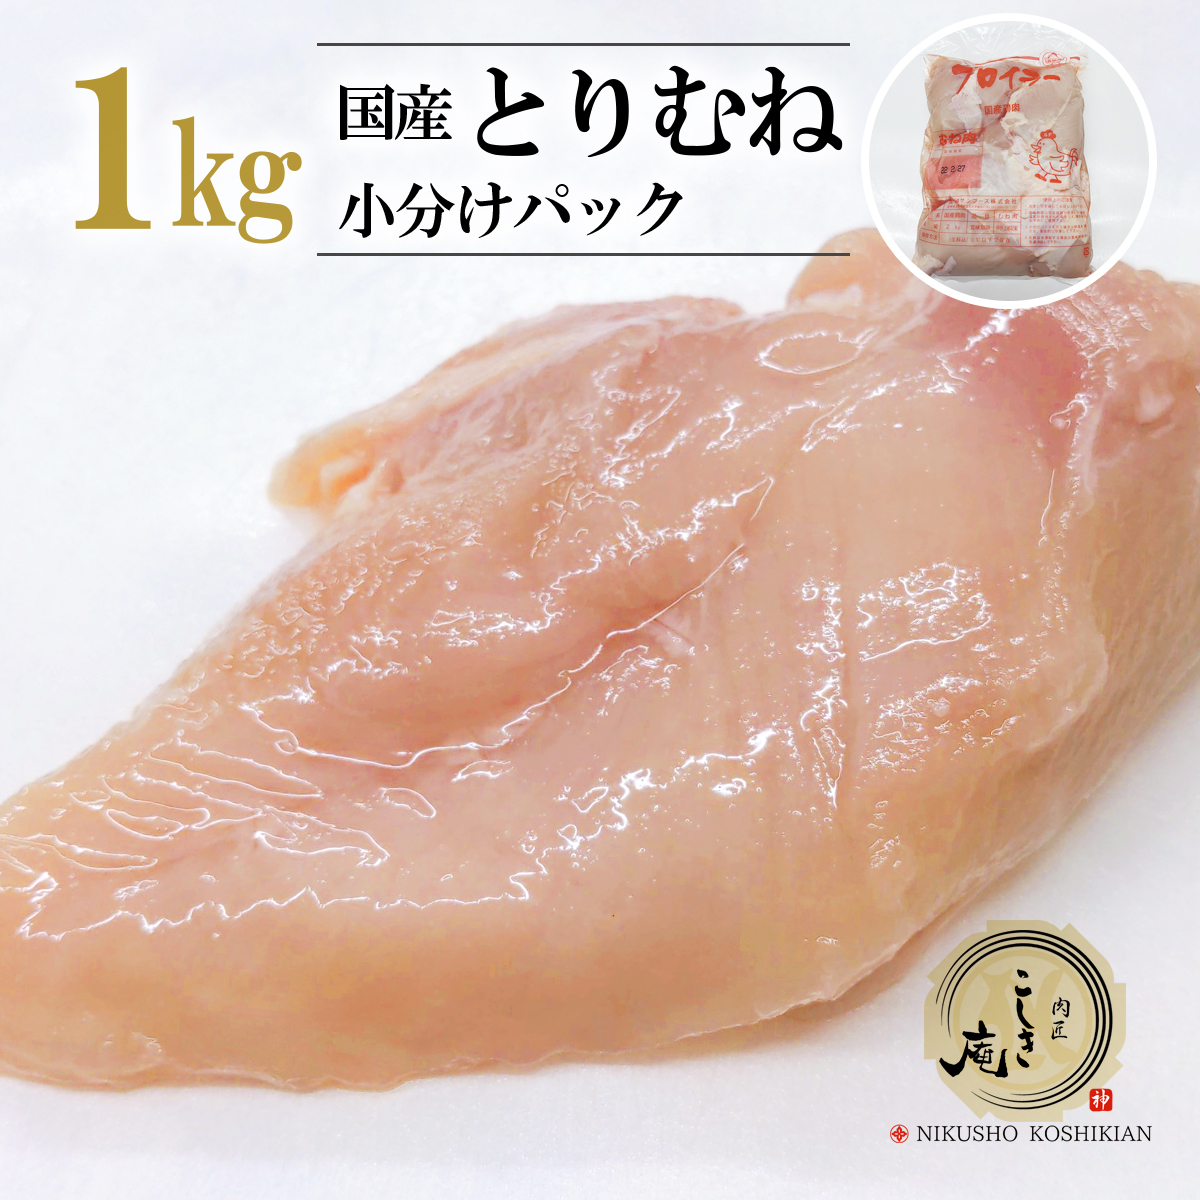 新作揃え 国産 鶏むね肉 1kg 小分けパック 業務用 冷凍 鶏肉 とり